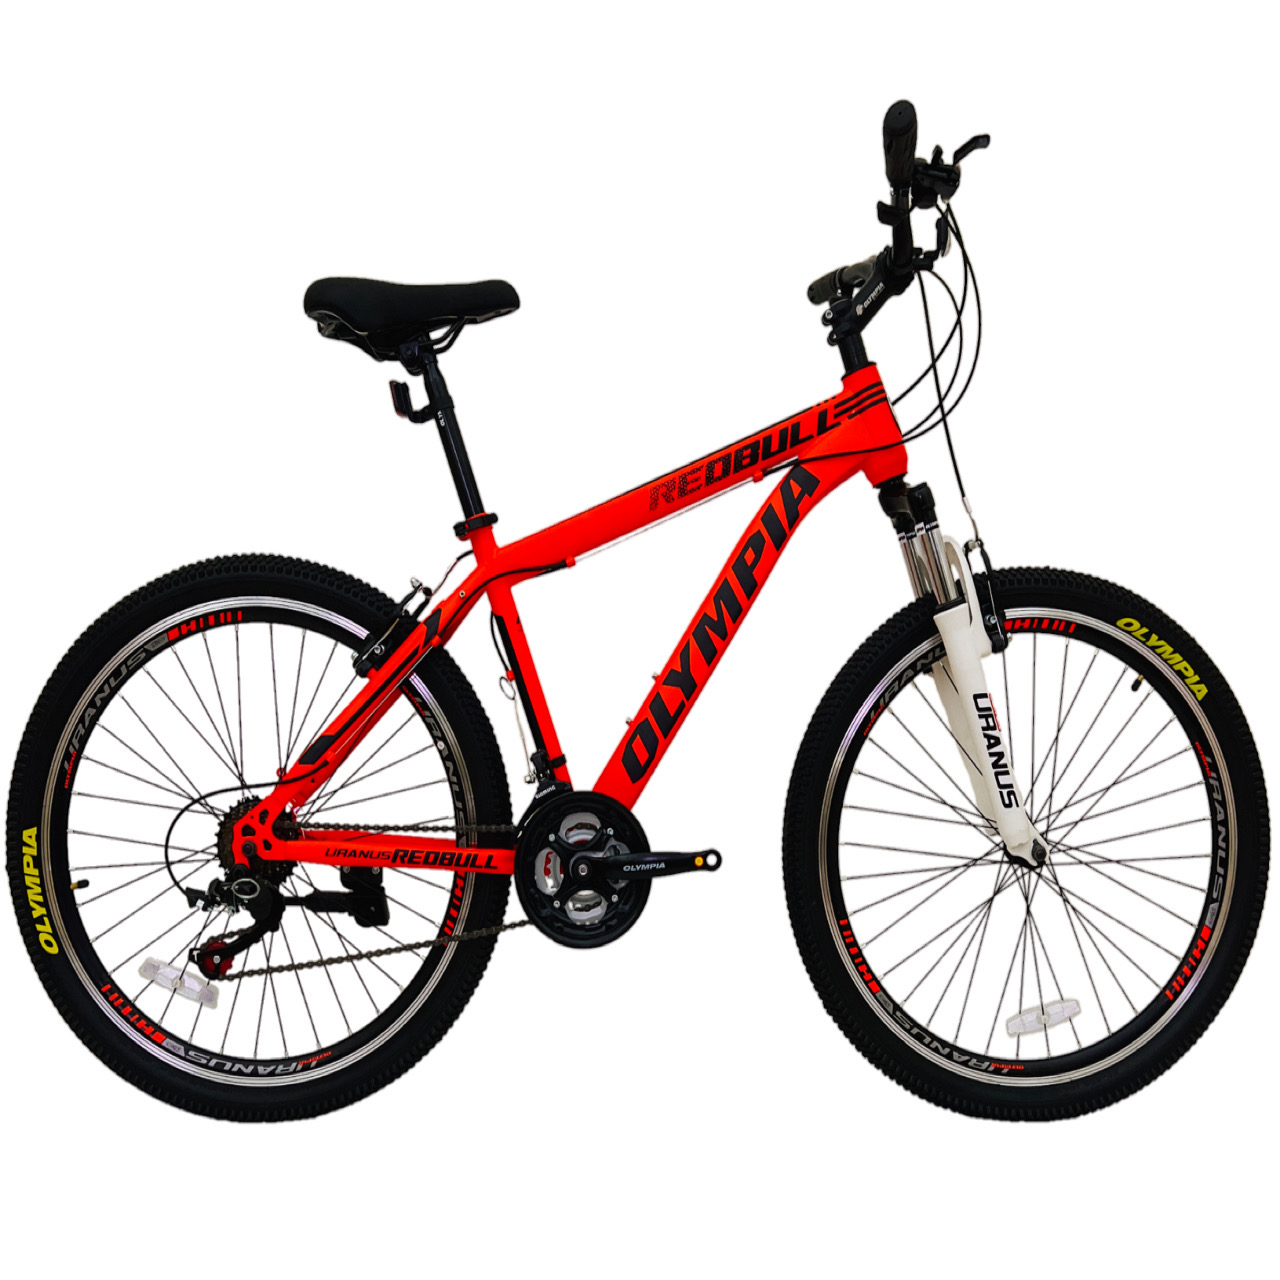 نکته خرید - قیمت روز دوچرخه کوهستان المپیا مدل REDBULL کد 4 سایز 26 خرید